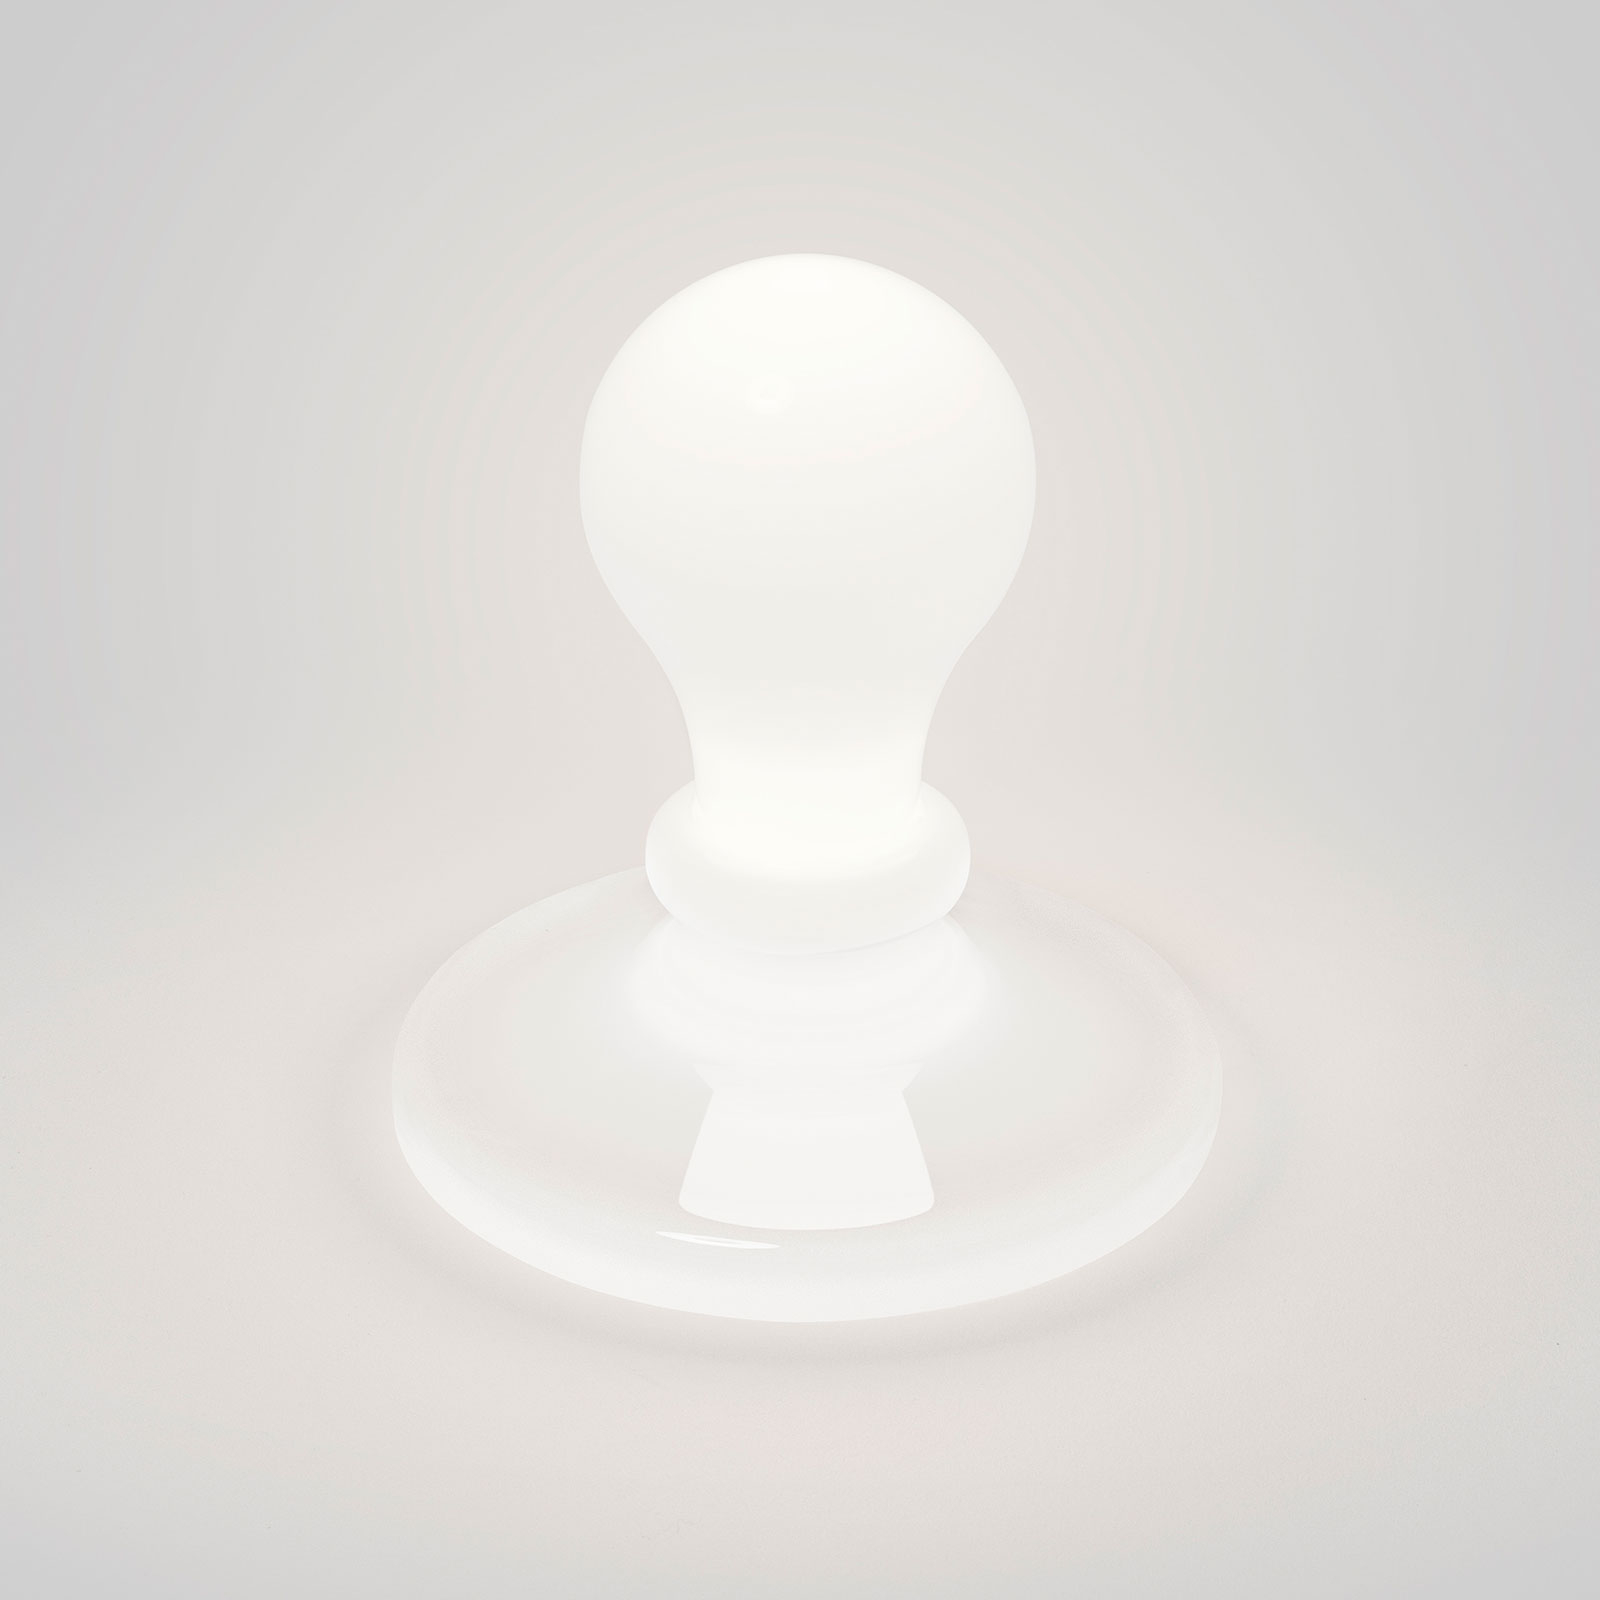 Foscarini White Light LED-Tischleuchte